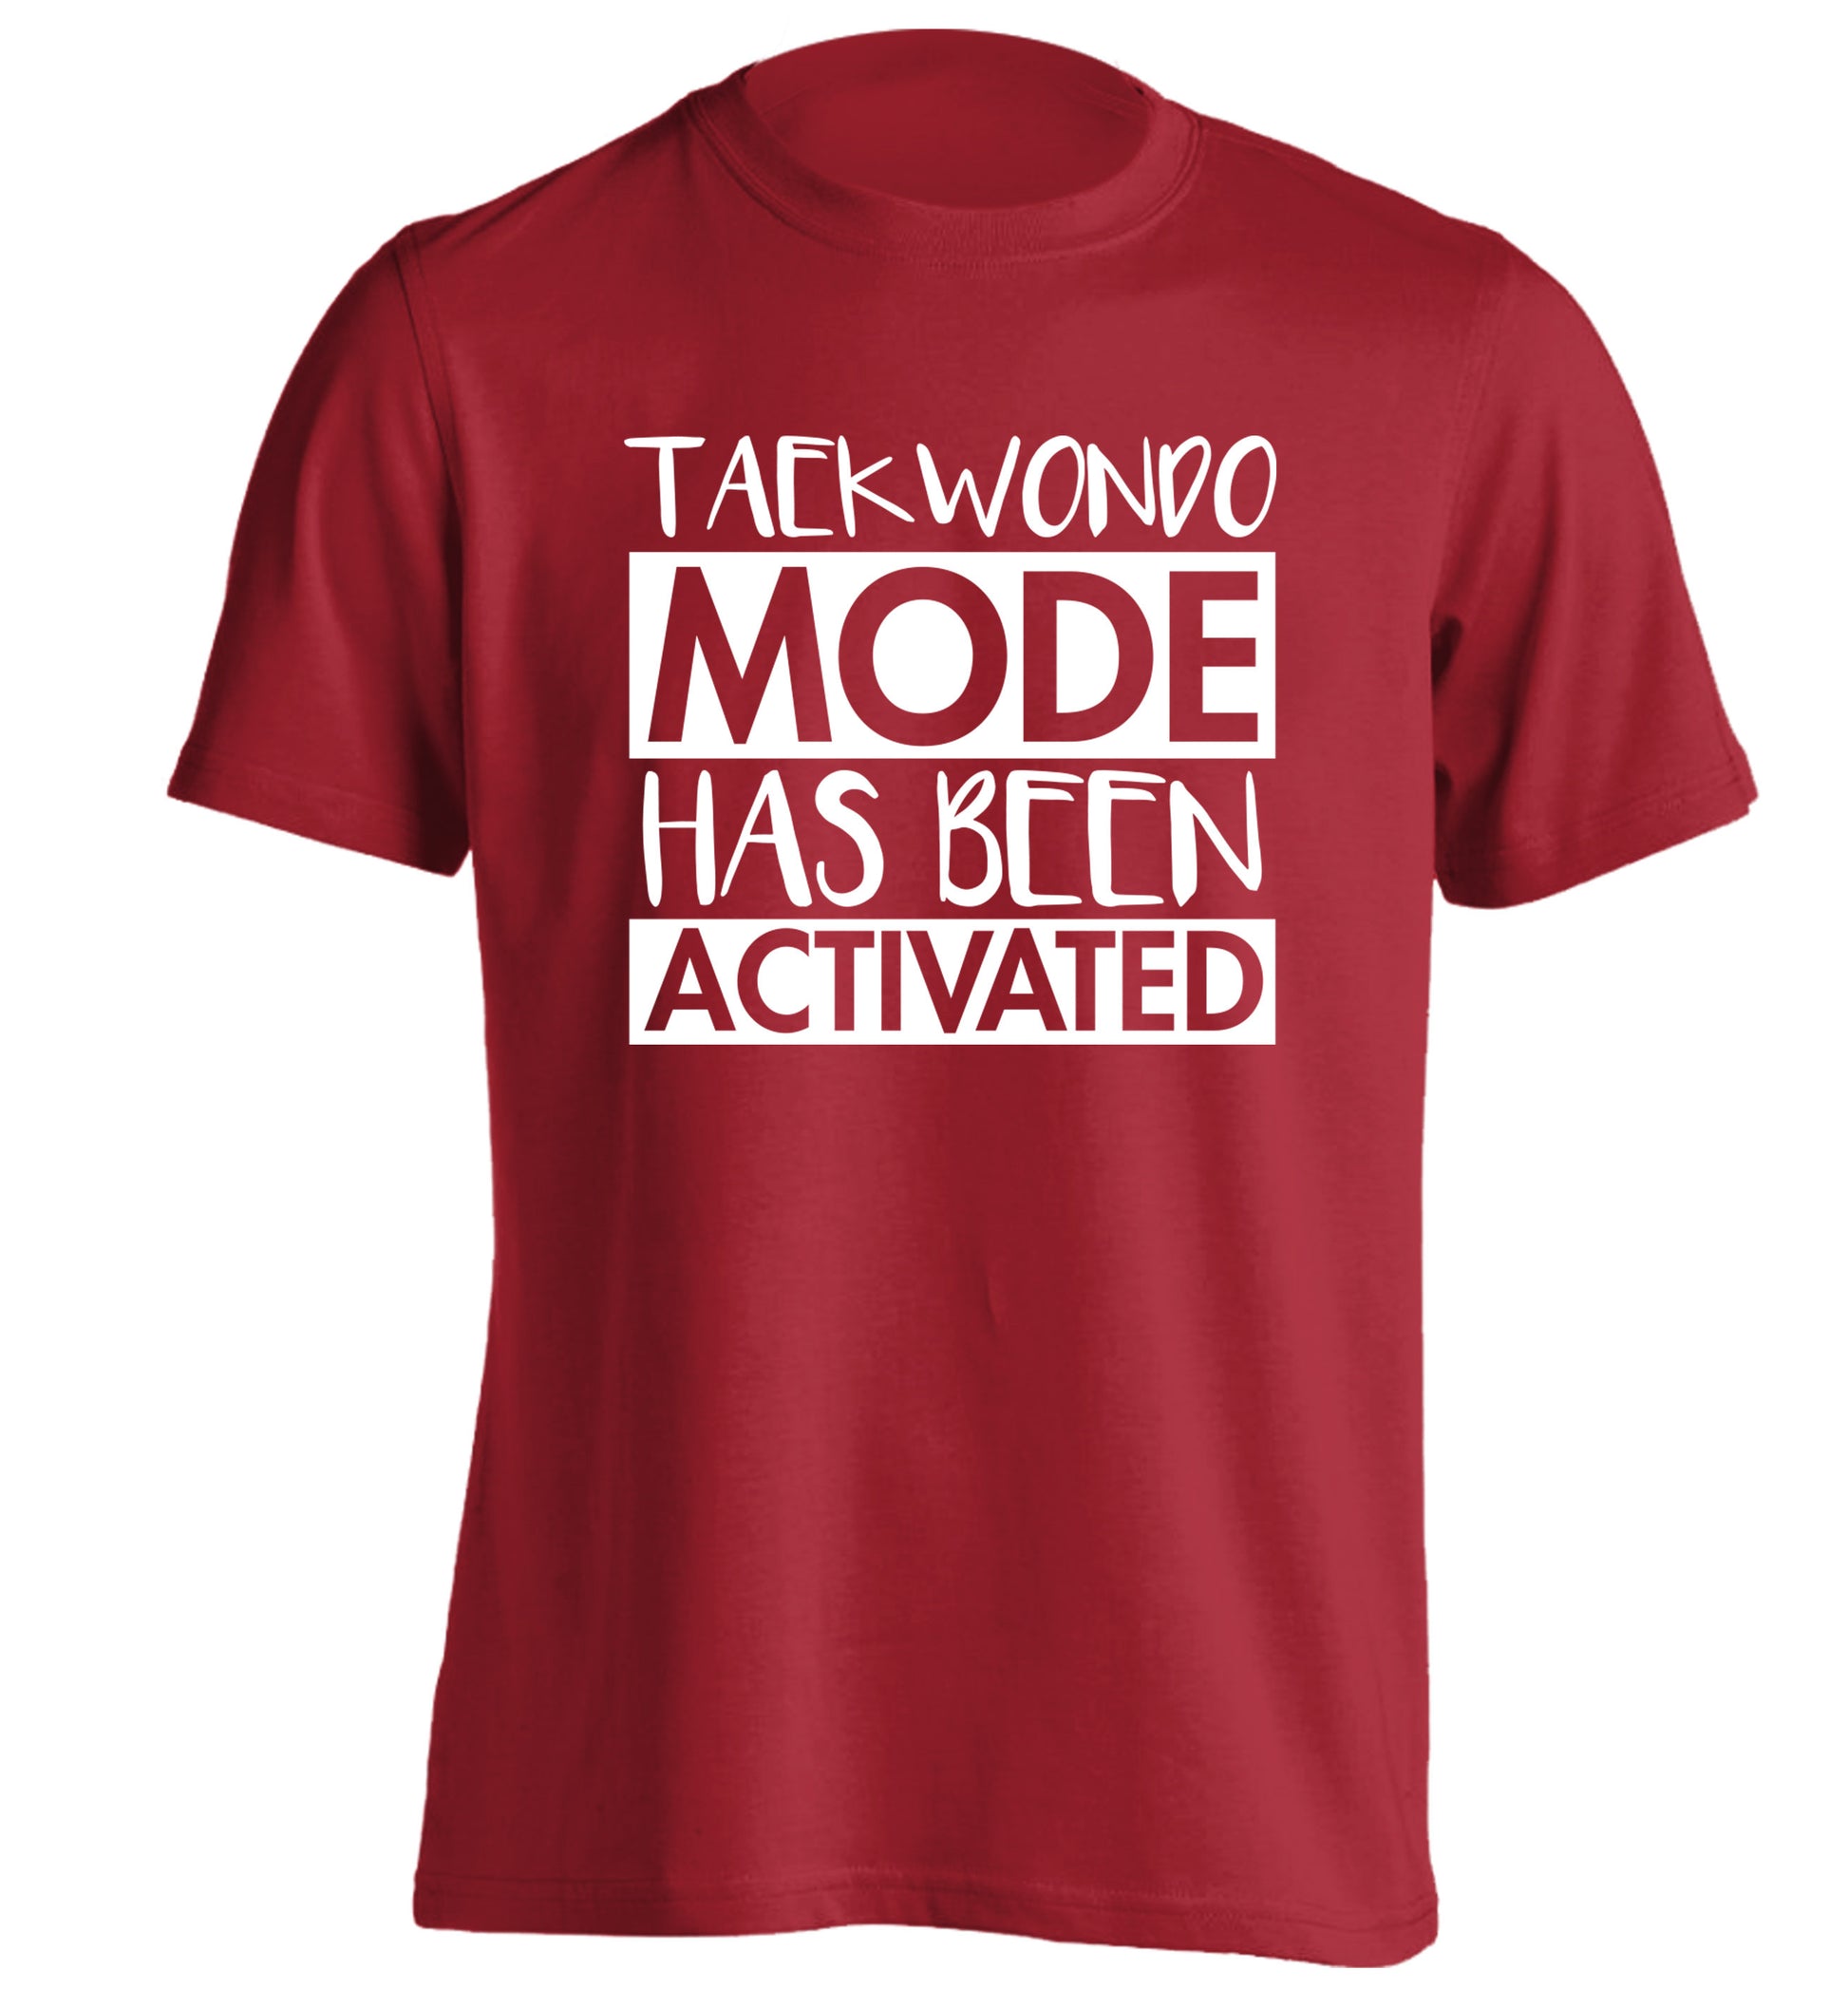 Taekwondo mode activated adults unisex red Tshirt 2XL